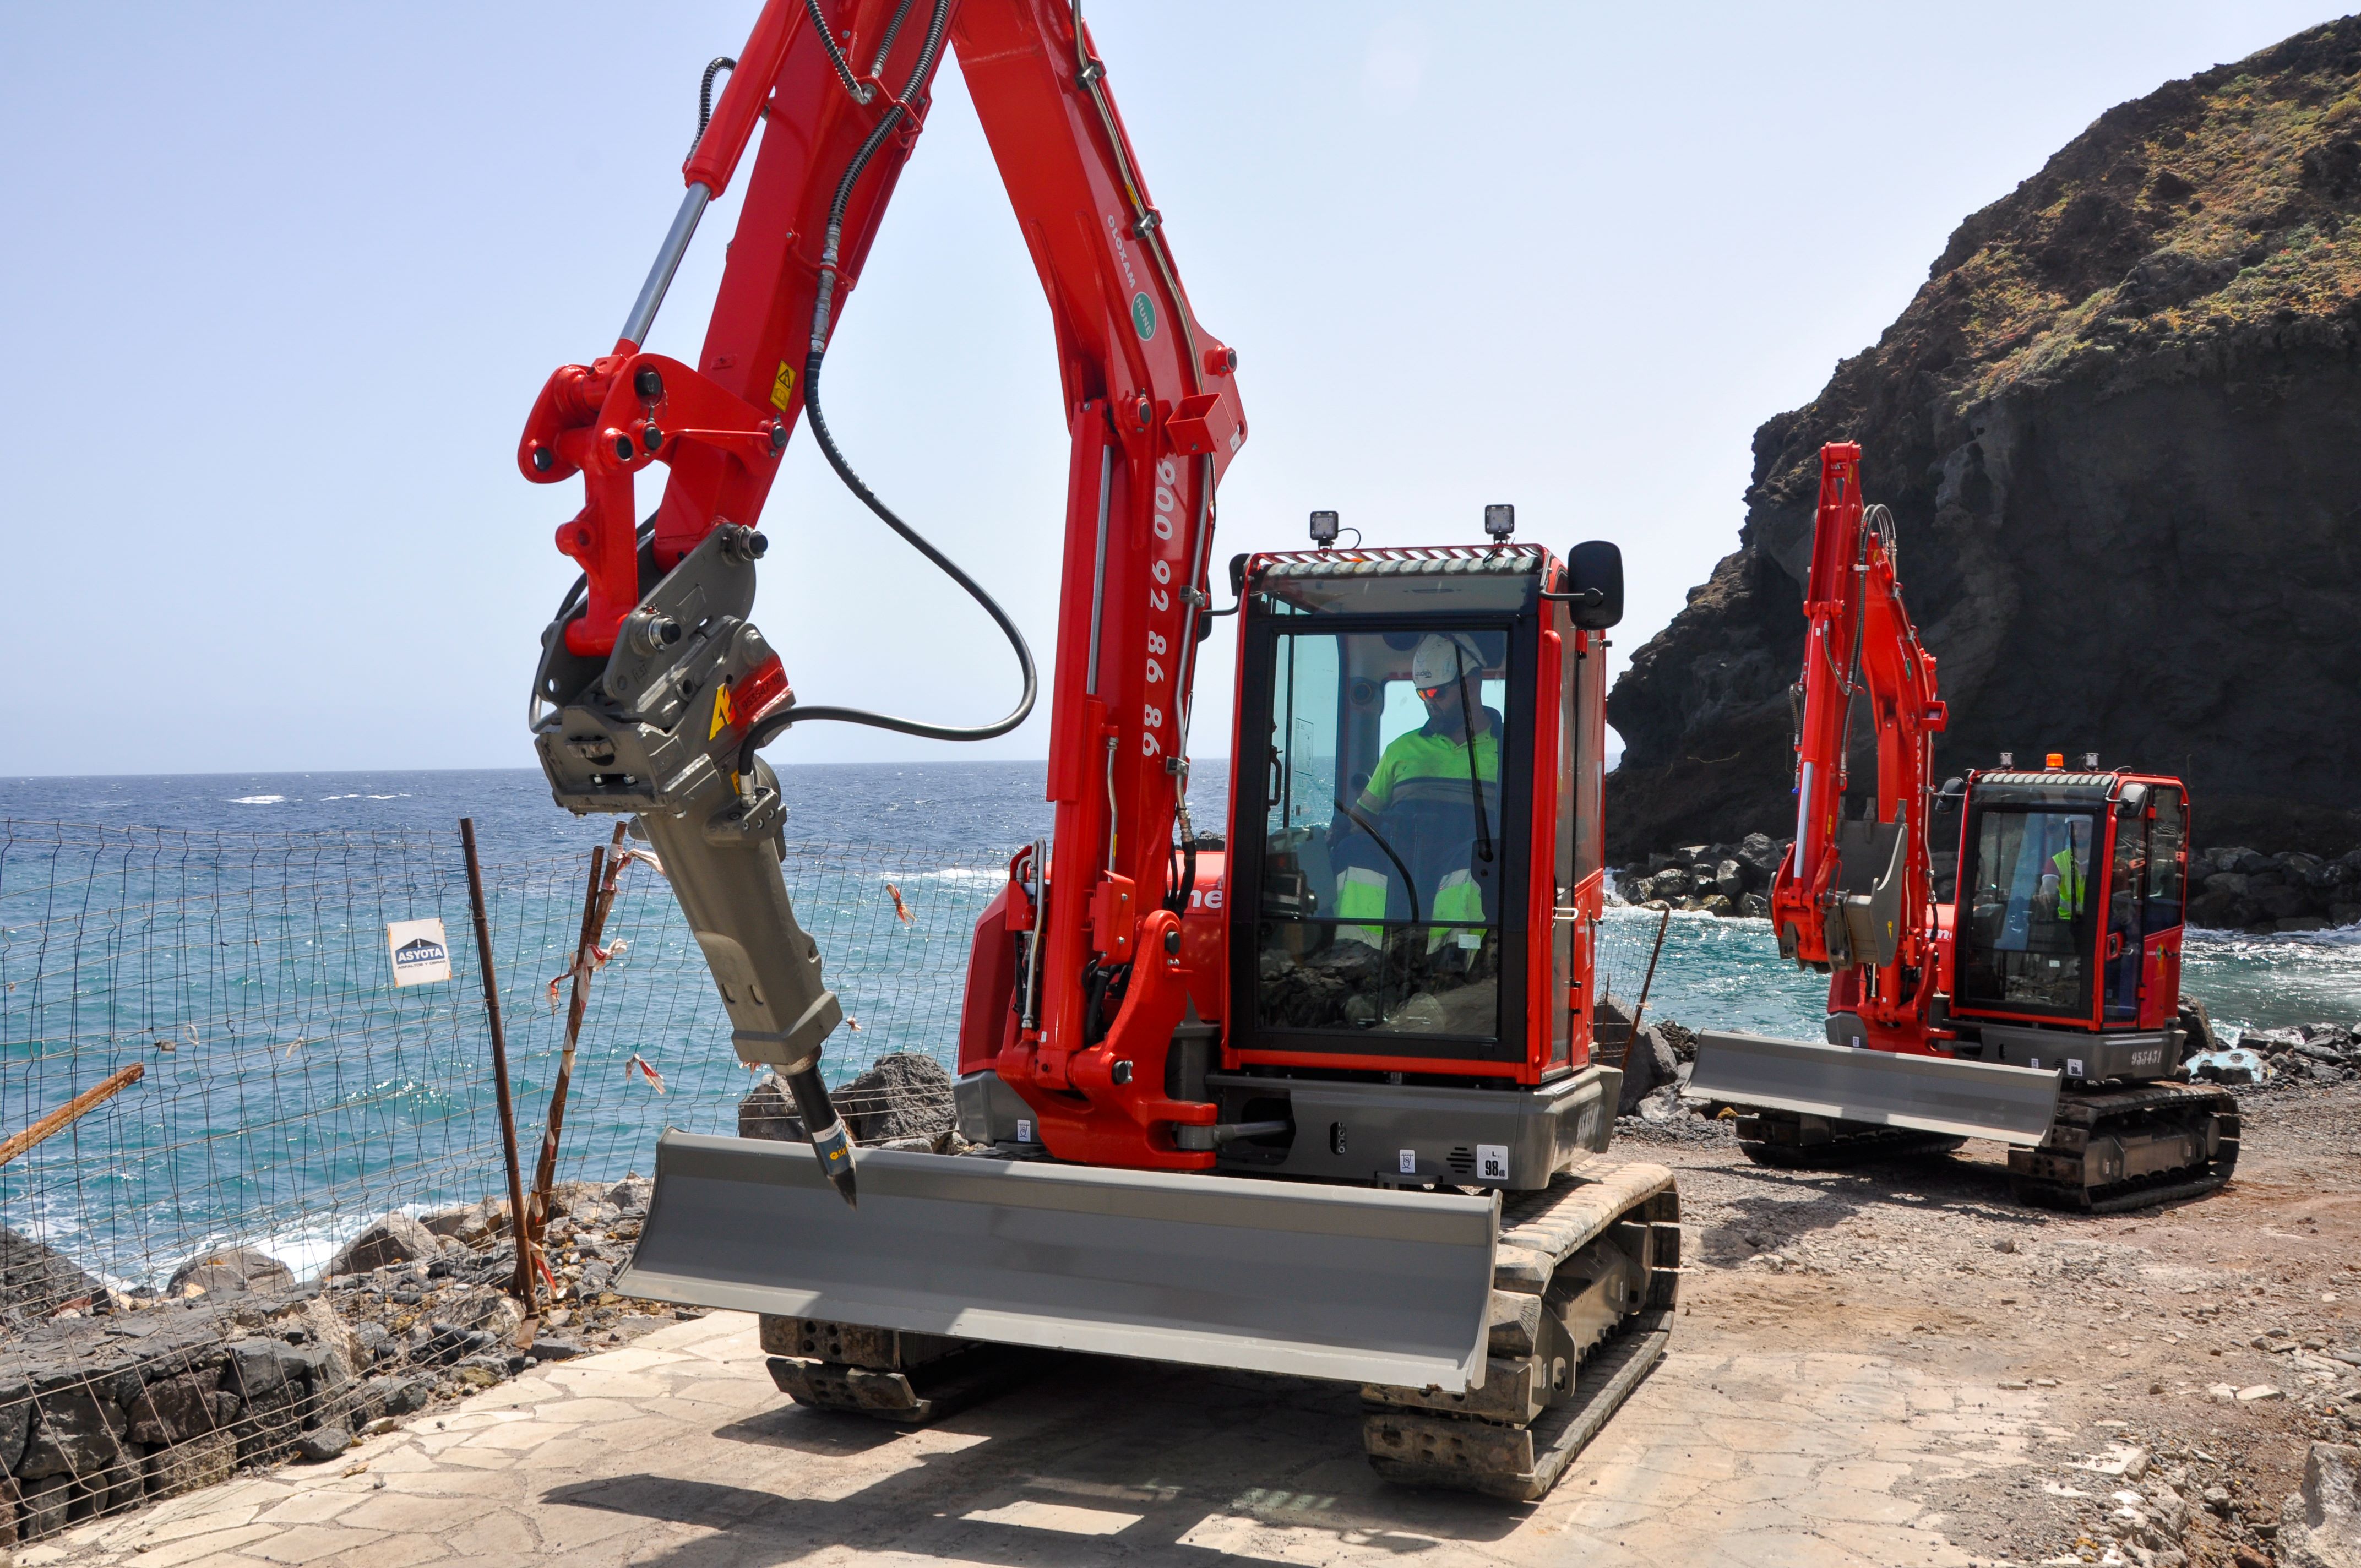 foto LoxamHune suministra una amplia gama de maquinaria a largo plazo para las obras de construcción del Paseo Marítimo de Los Roques de Fasnia, en Tenerife.